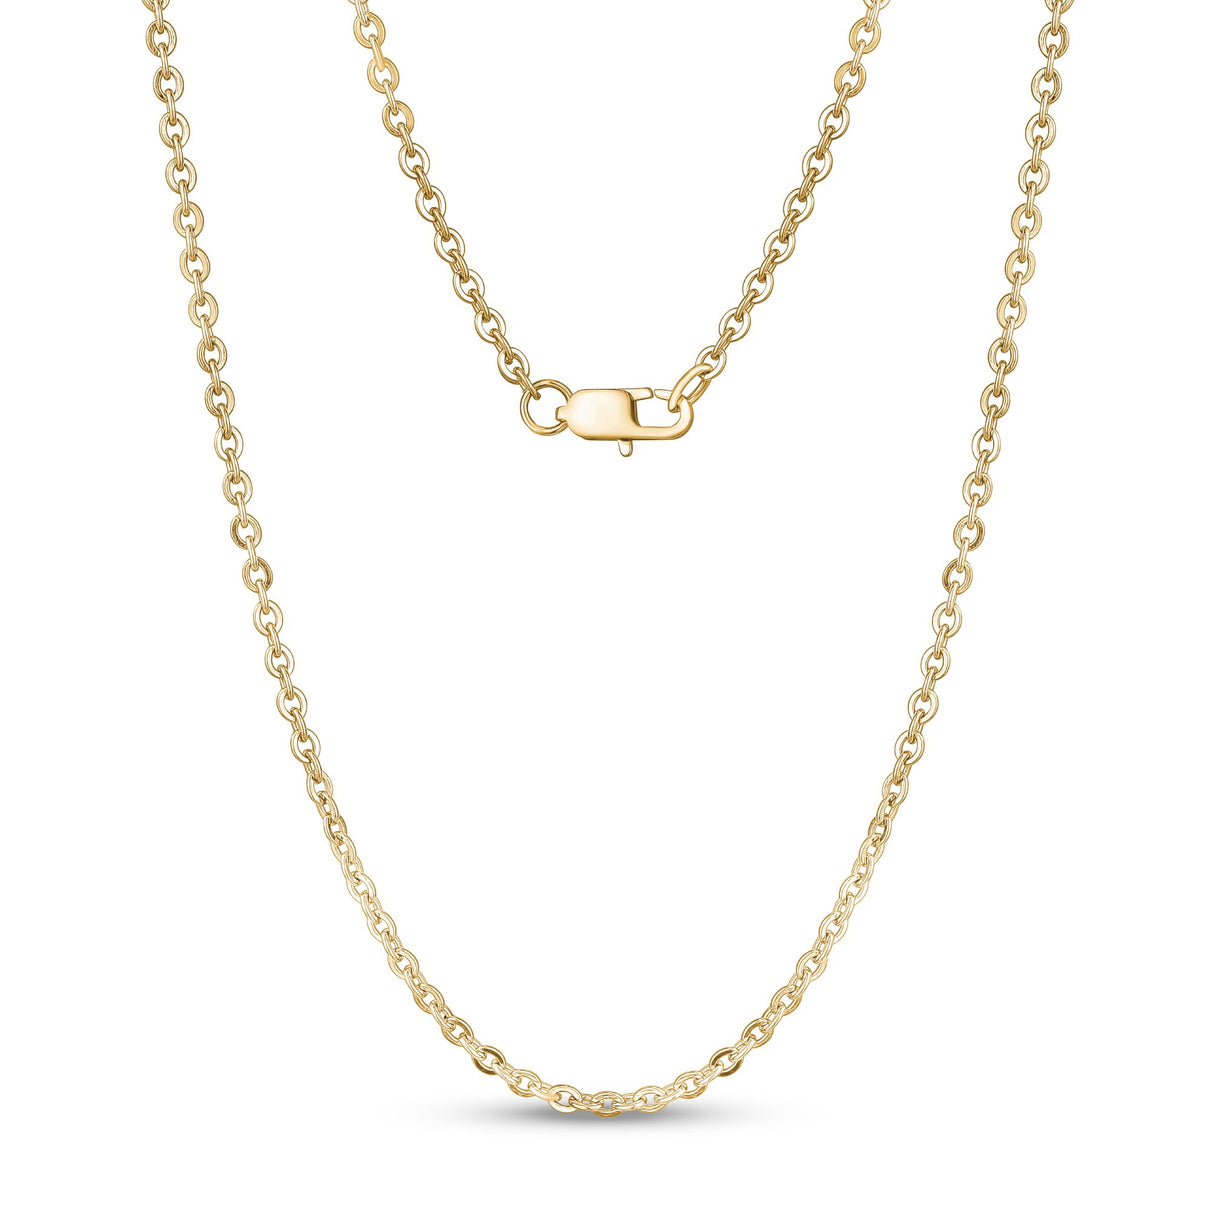 Collares unisex - Collar de cadena de acero dorado de eslabones ovalados de ancla plana de 3 mm